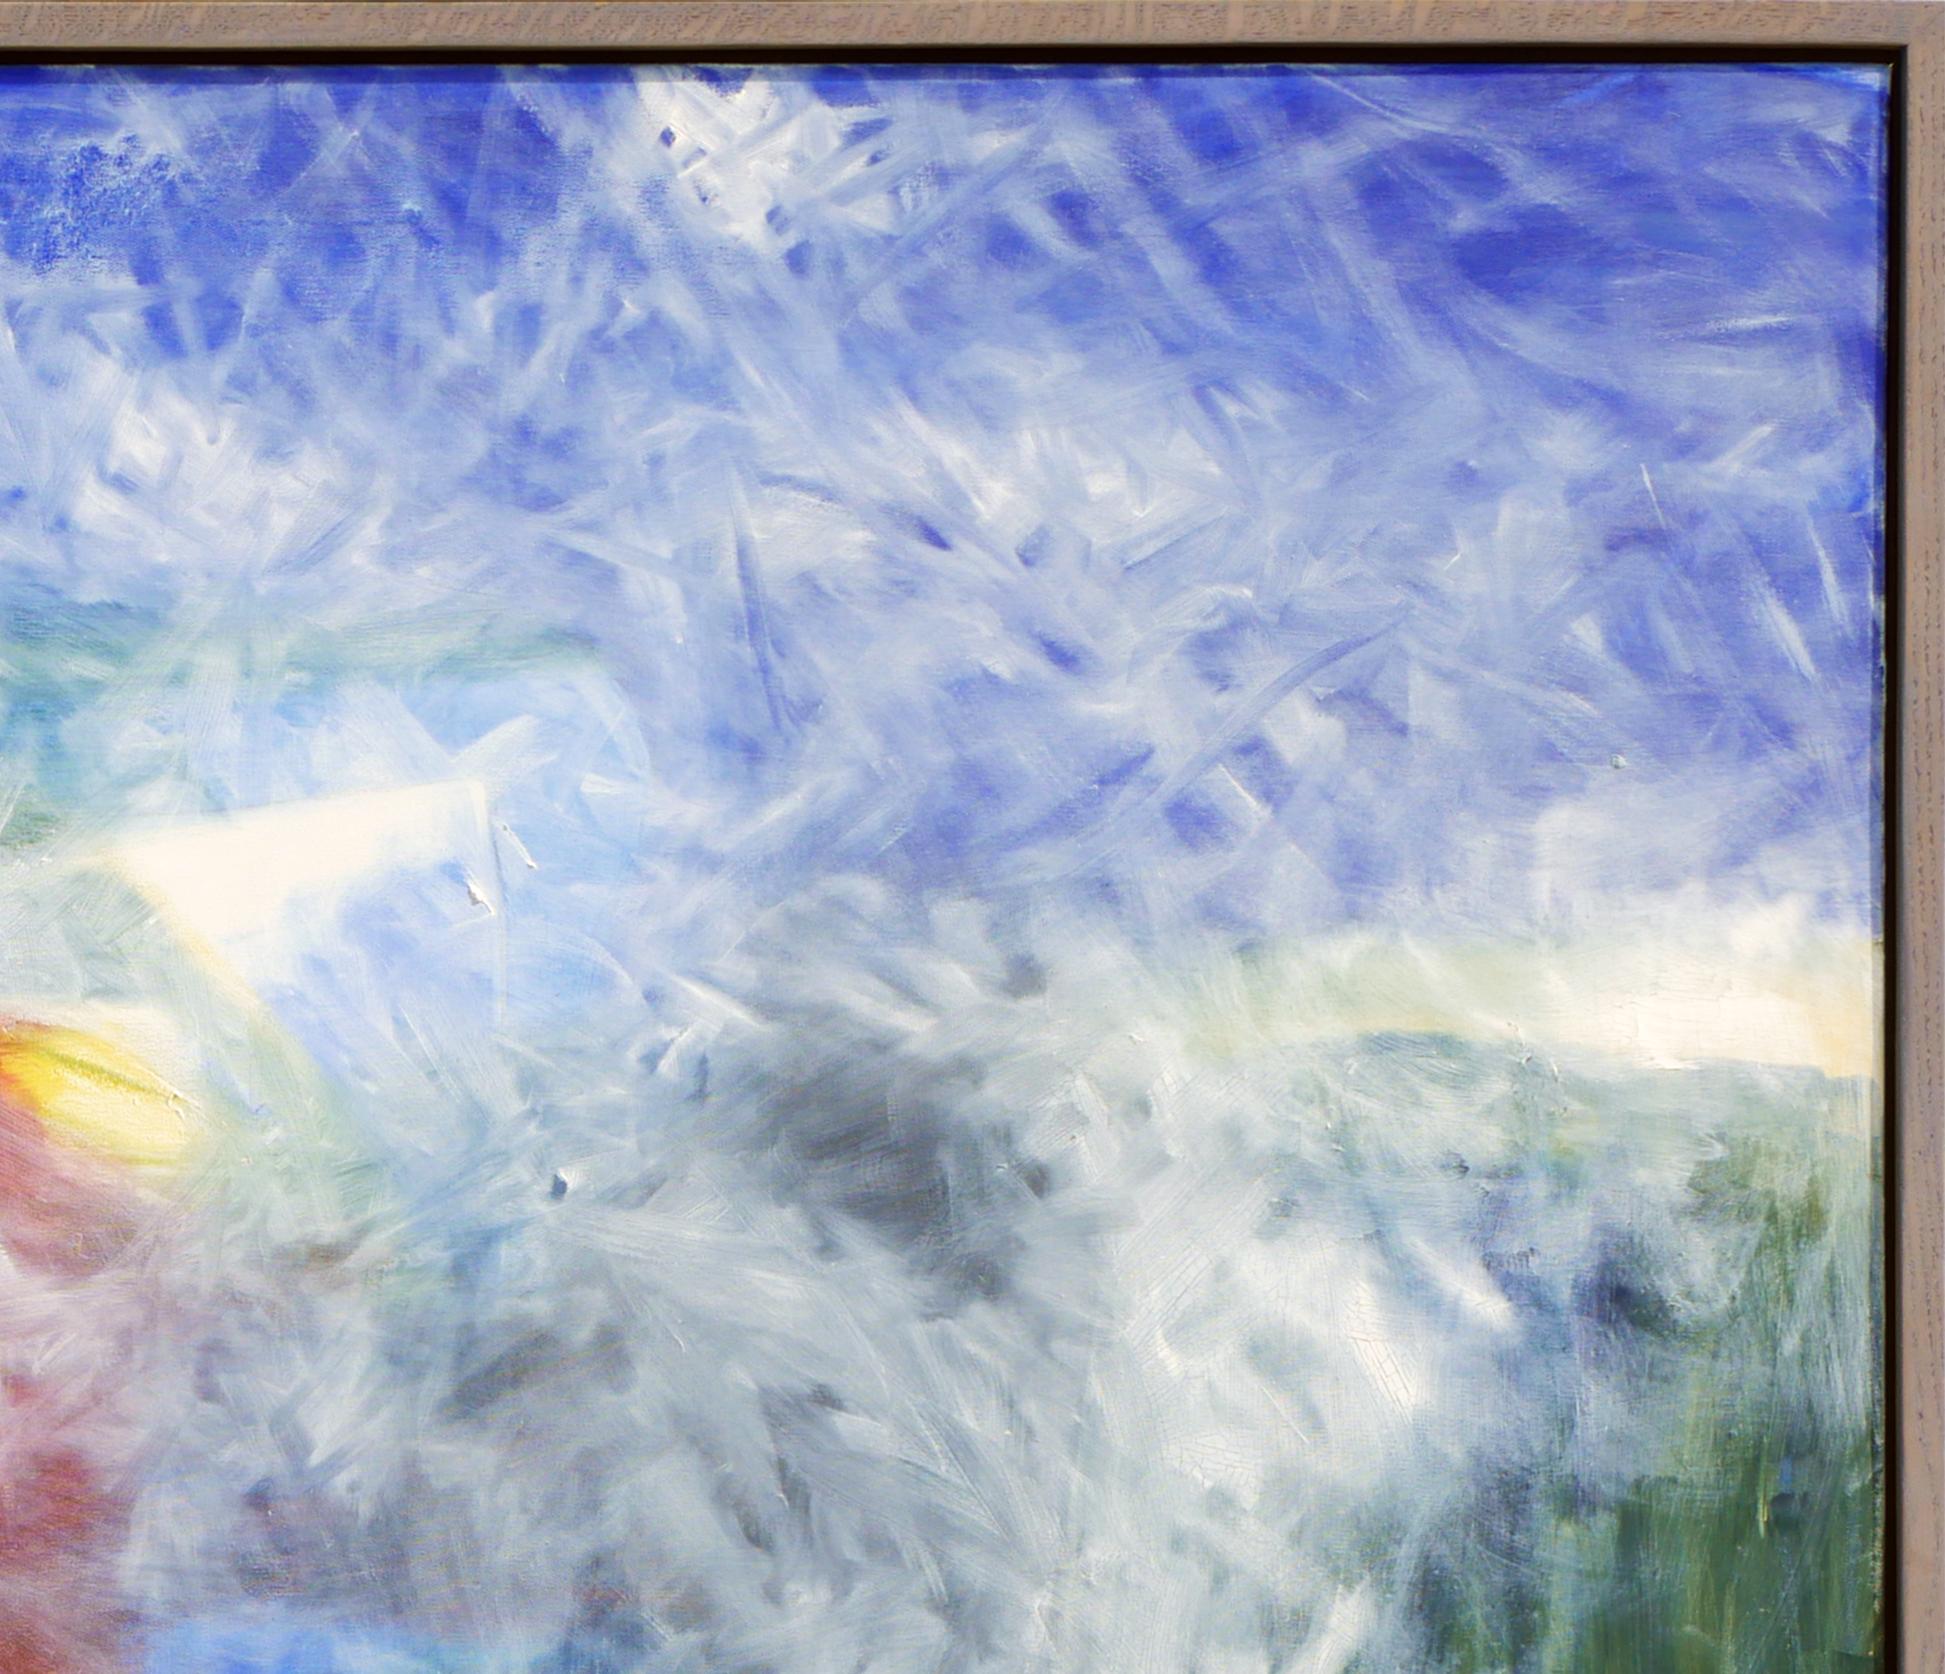 Peinture abstraite colorée de l'artiste John Calaway de Corpus Christi, TX. La pièce représente un champ de couleurs bleu, vert, rouge et jaune avec un cercle bleu vif en bas à gauche. On remarque également des touches de blanc sur la toile, qui